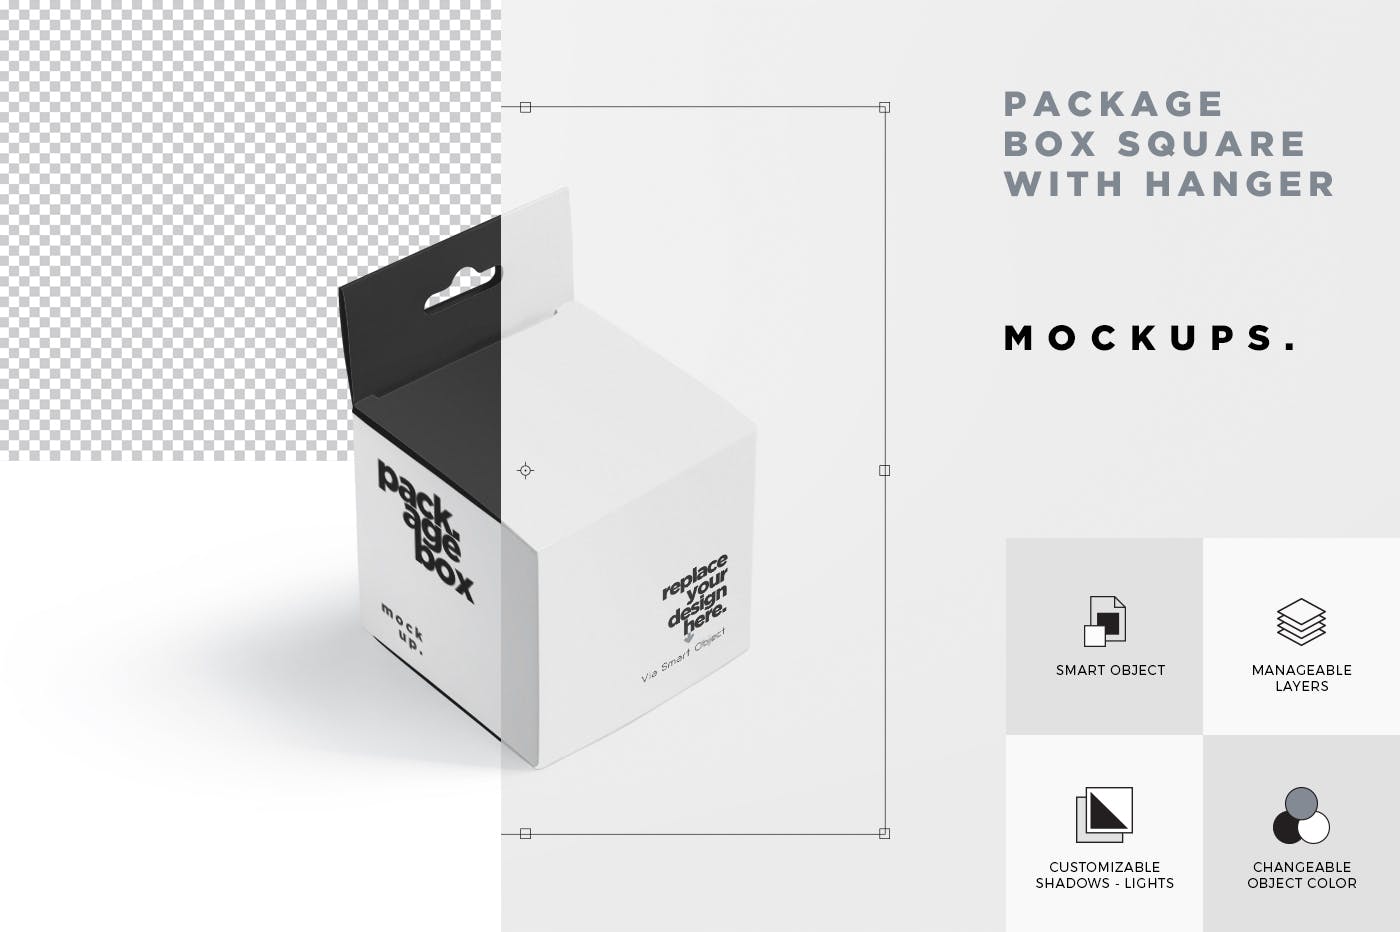 挂耳式方形产品包装盒样机模板 Package Box Mockup Set – Square With Hanger插图(6)